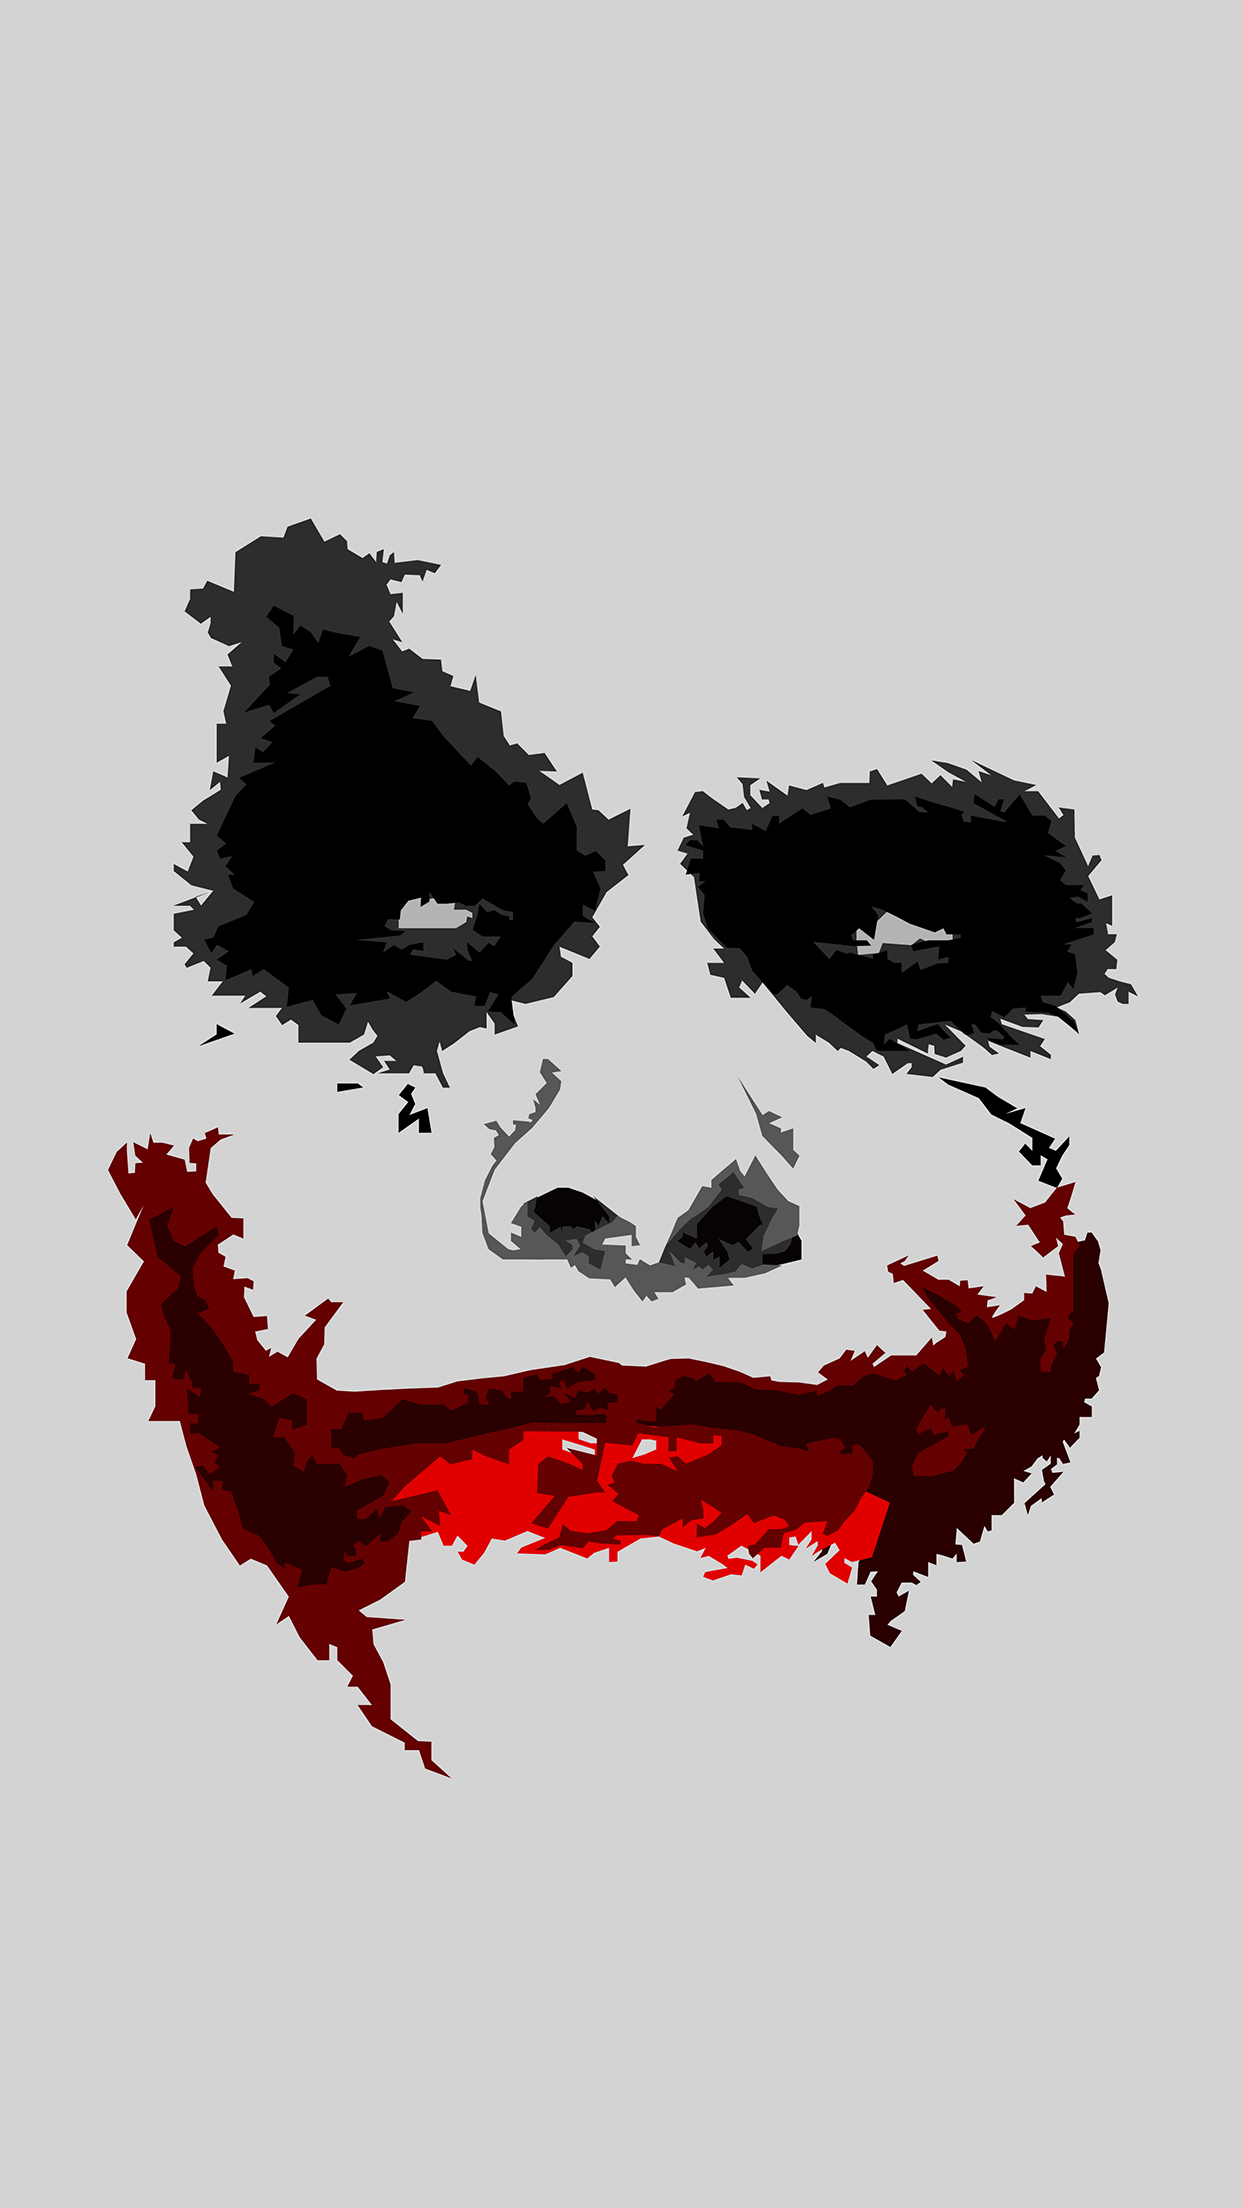 Joker Face iPhone 3wallpaper Parallax